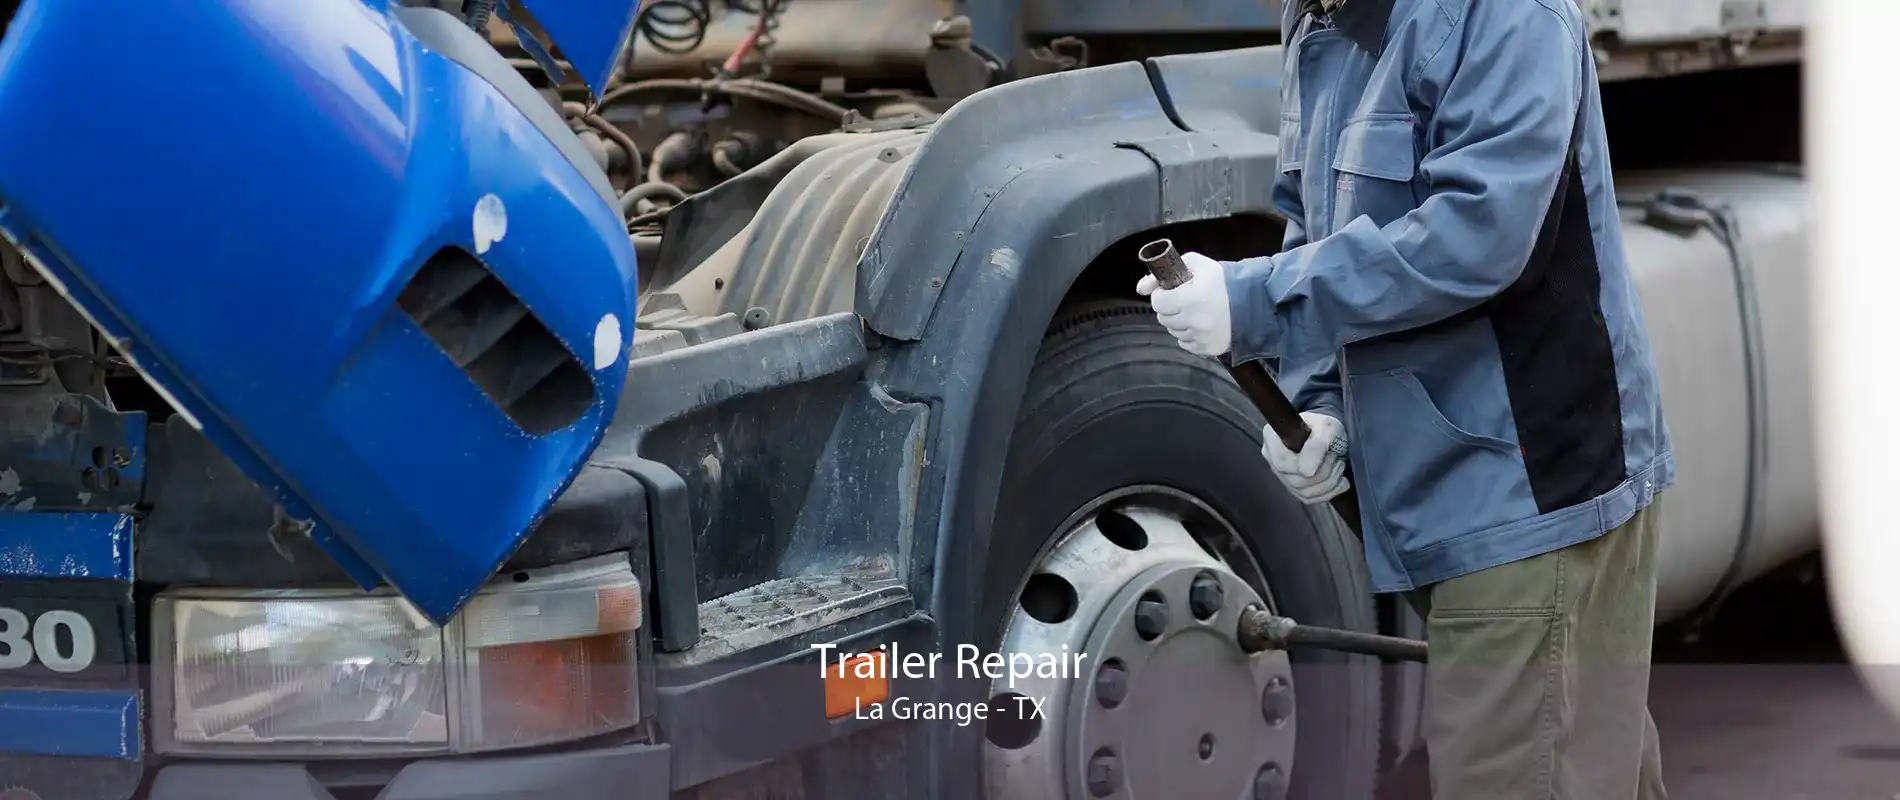 Trailer Repair La Grange - TX